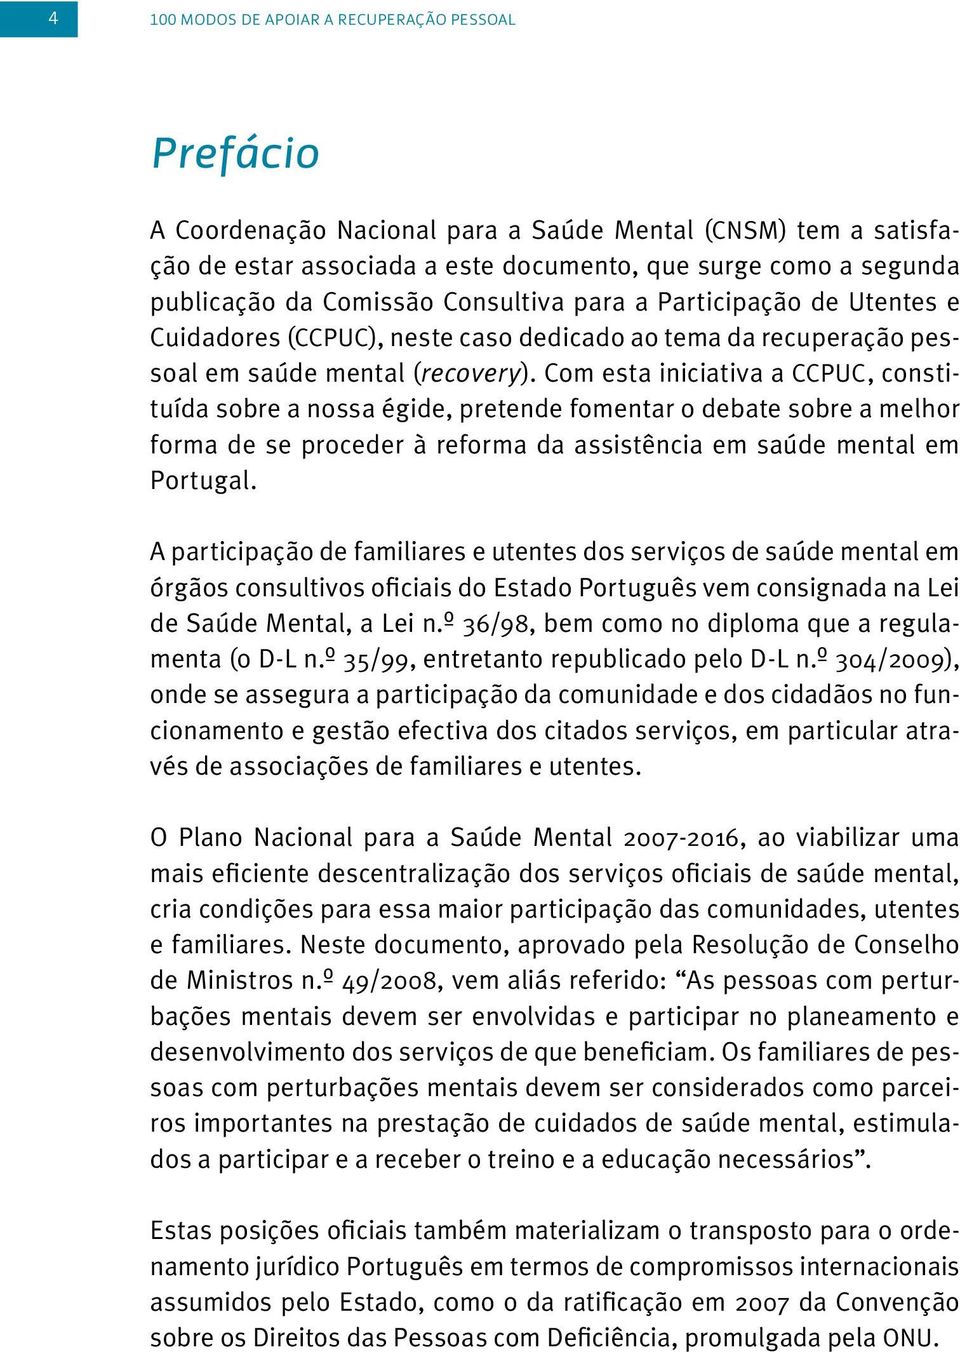 Com esta iniciativa a CCPUC, constituída sobre a nossa égide, pretende fomentar o debate sobre a melhor forma de se proceder à reforma da assistência em saúde mental em Portugal.